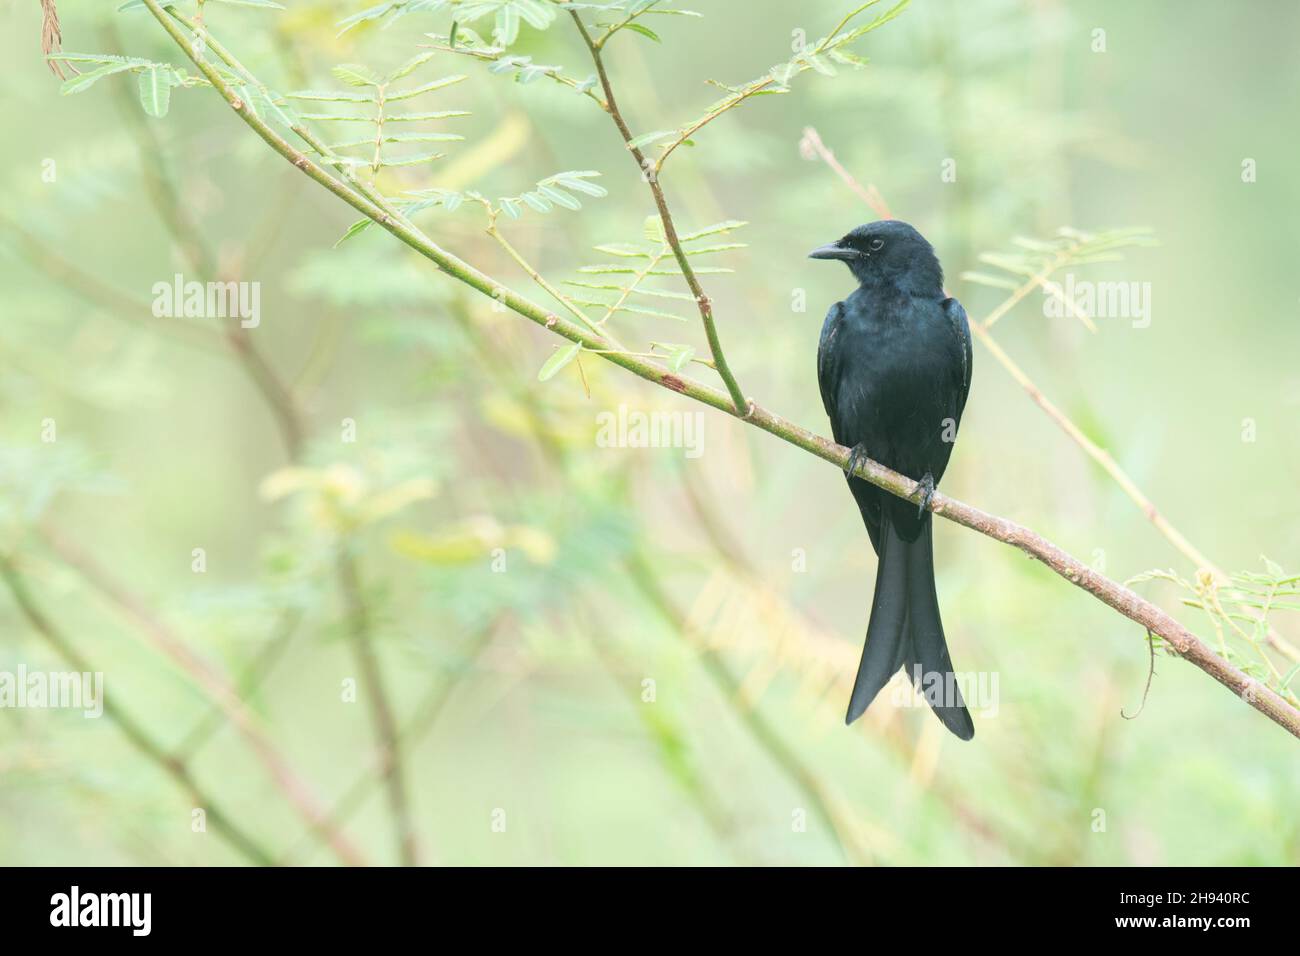 Le drongo noir (Dicrurus macrocercus) est un petit oiseau de passereau asiatique de la famille des Dicruridae.C'est un éleveur résident commun dans une grande partie de tr Banque D'Images